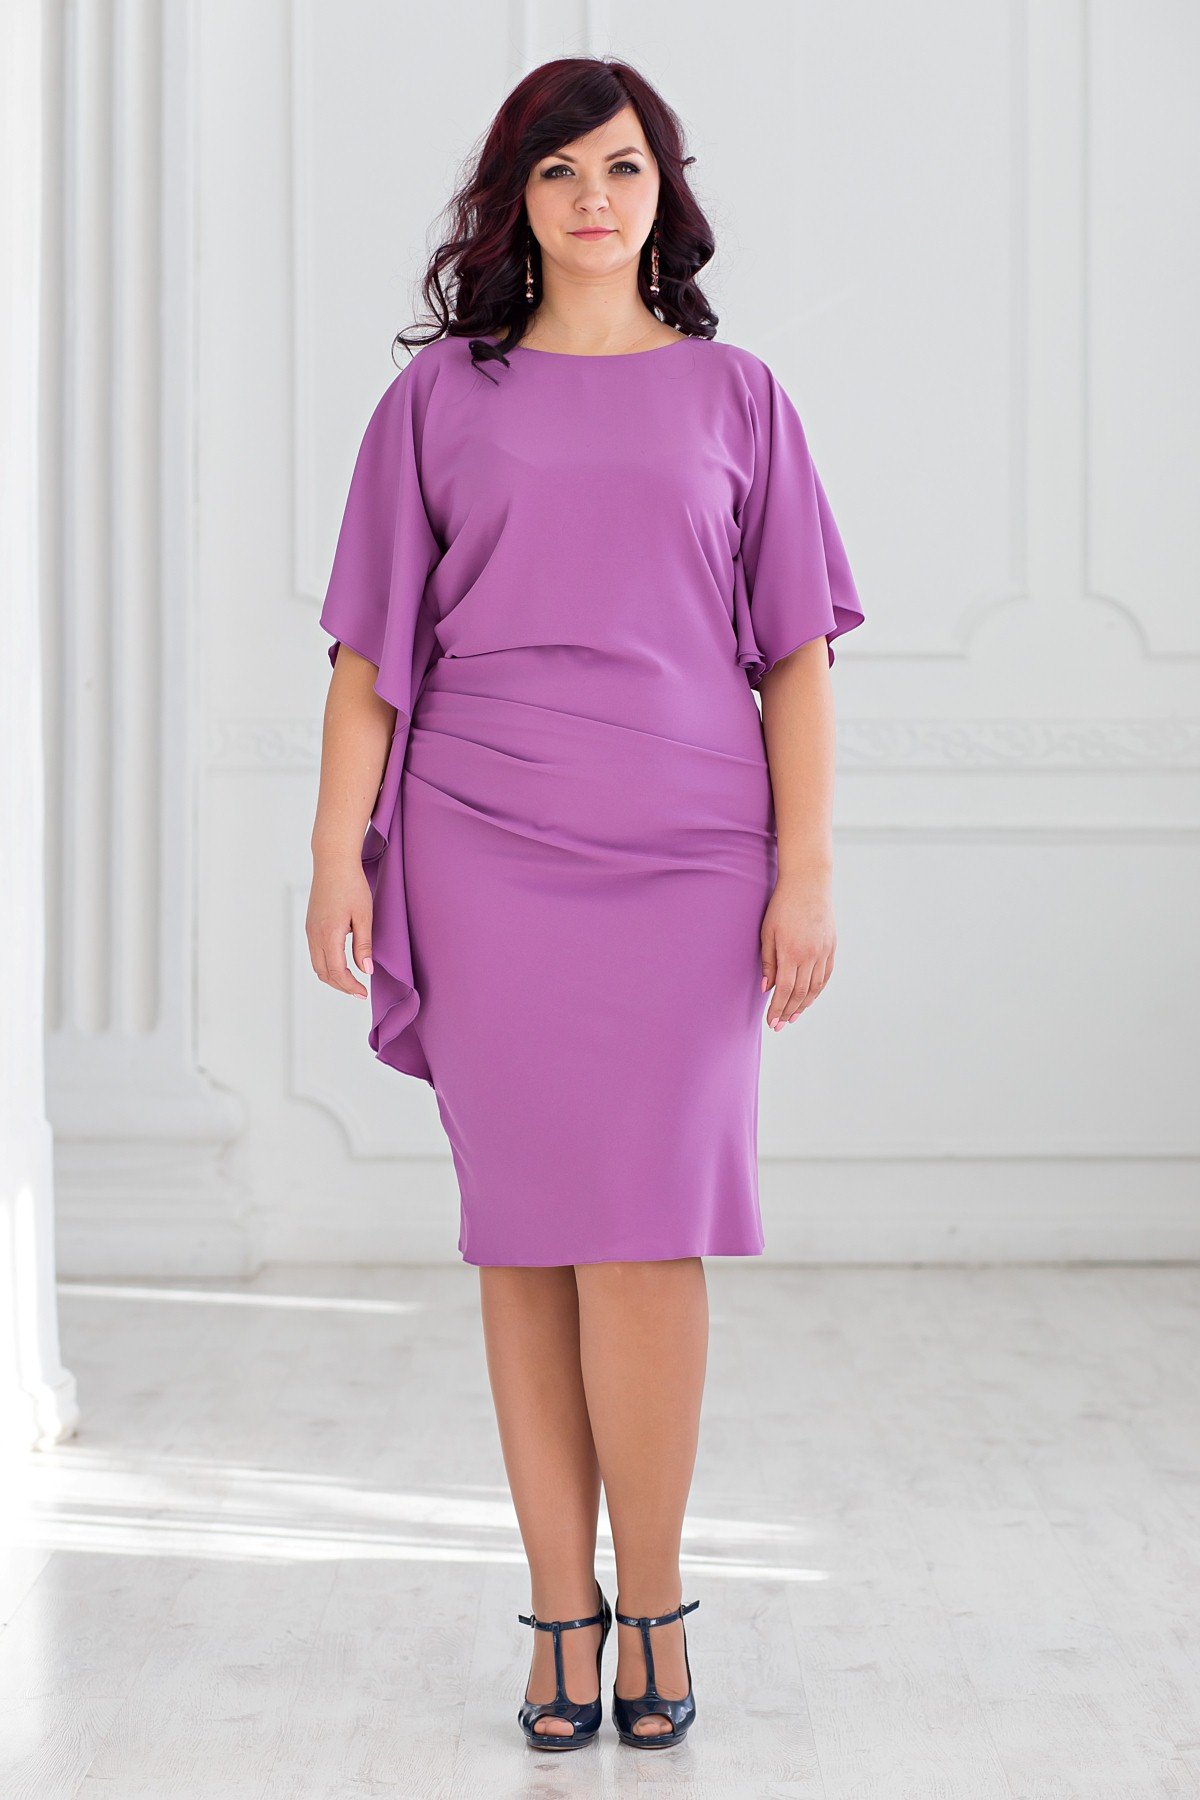 Валберис платье больших размеров праздничные. Платья на валберис 52-54 размер. Платье Marina Rinaldi шёлк. Платье 2022 валберис.